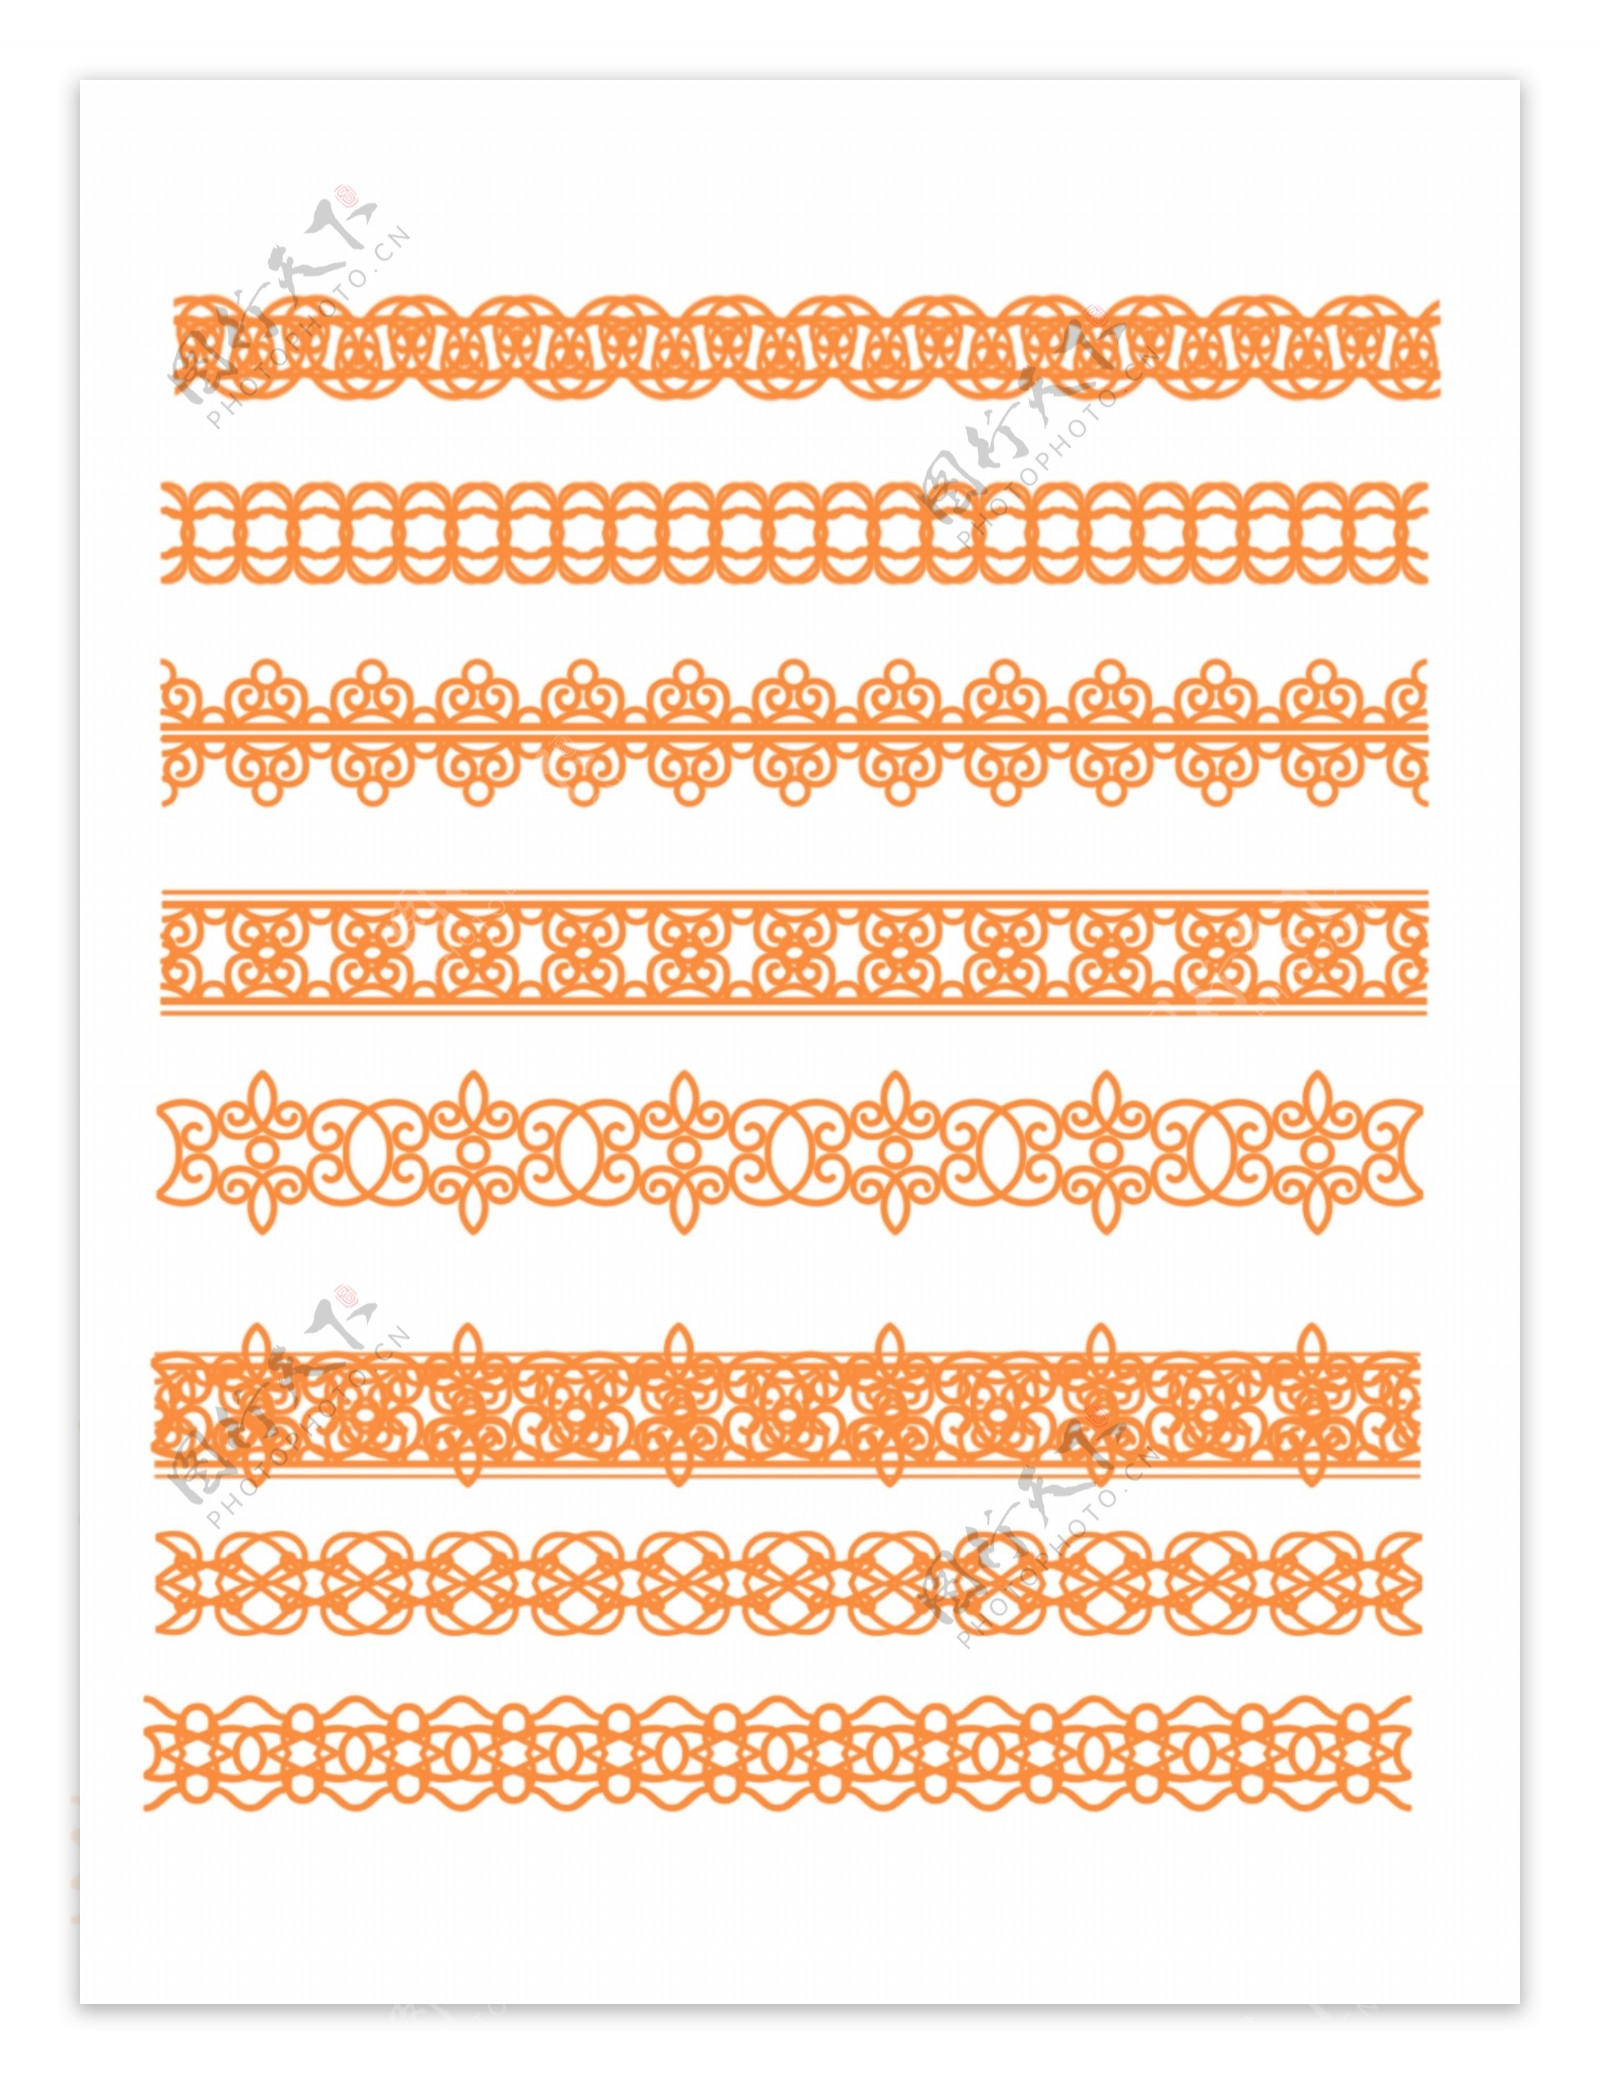 原创欧式复杂边框套图橙色严肃可商用元素